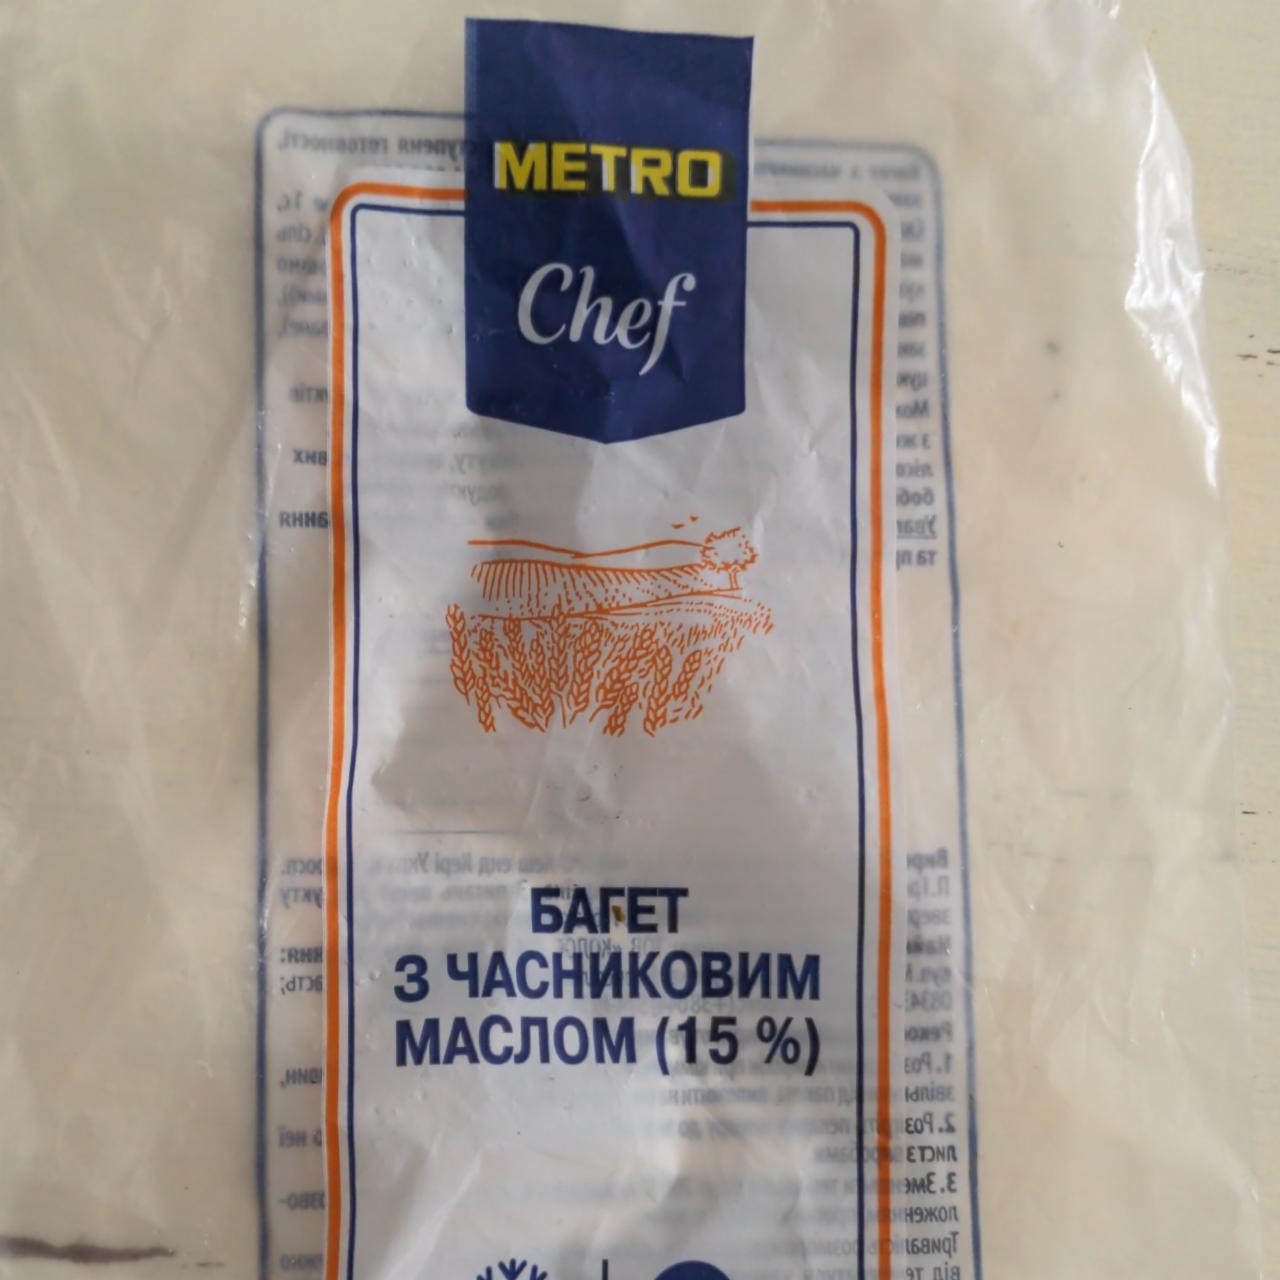 Фото - Багет з часниковим маслом високого ступеня готовності заморожений Metro Chef